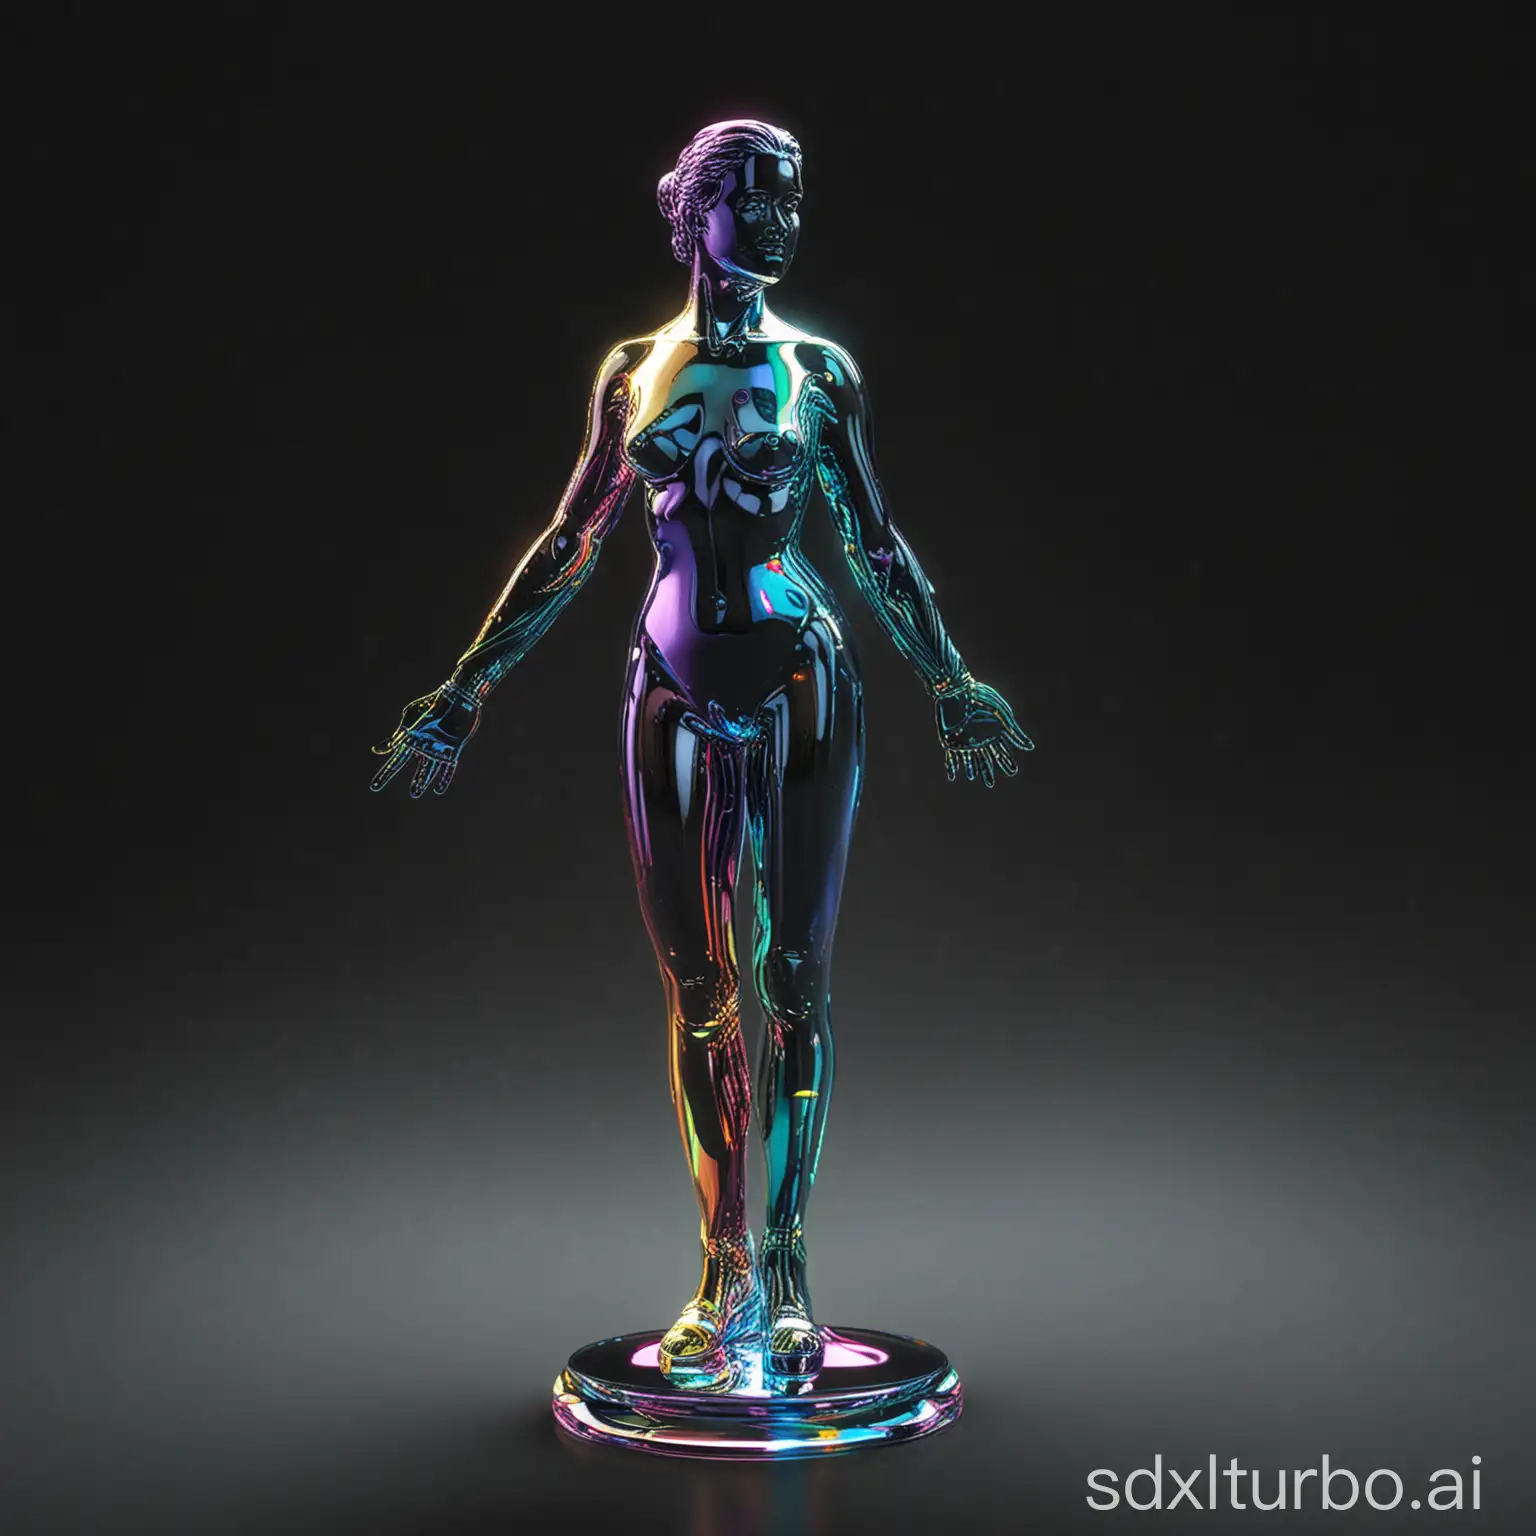 Iridescent-Glass-Figure-Sculpture-Digital-Modern-Art-on-Black-Background